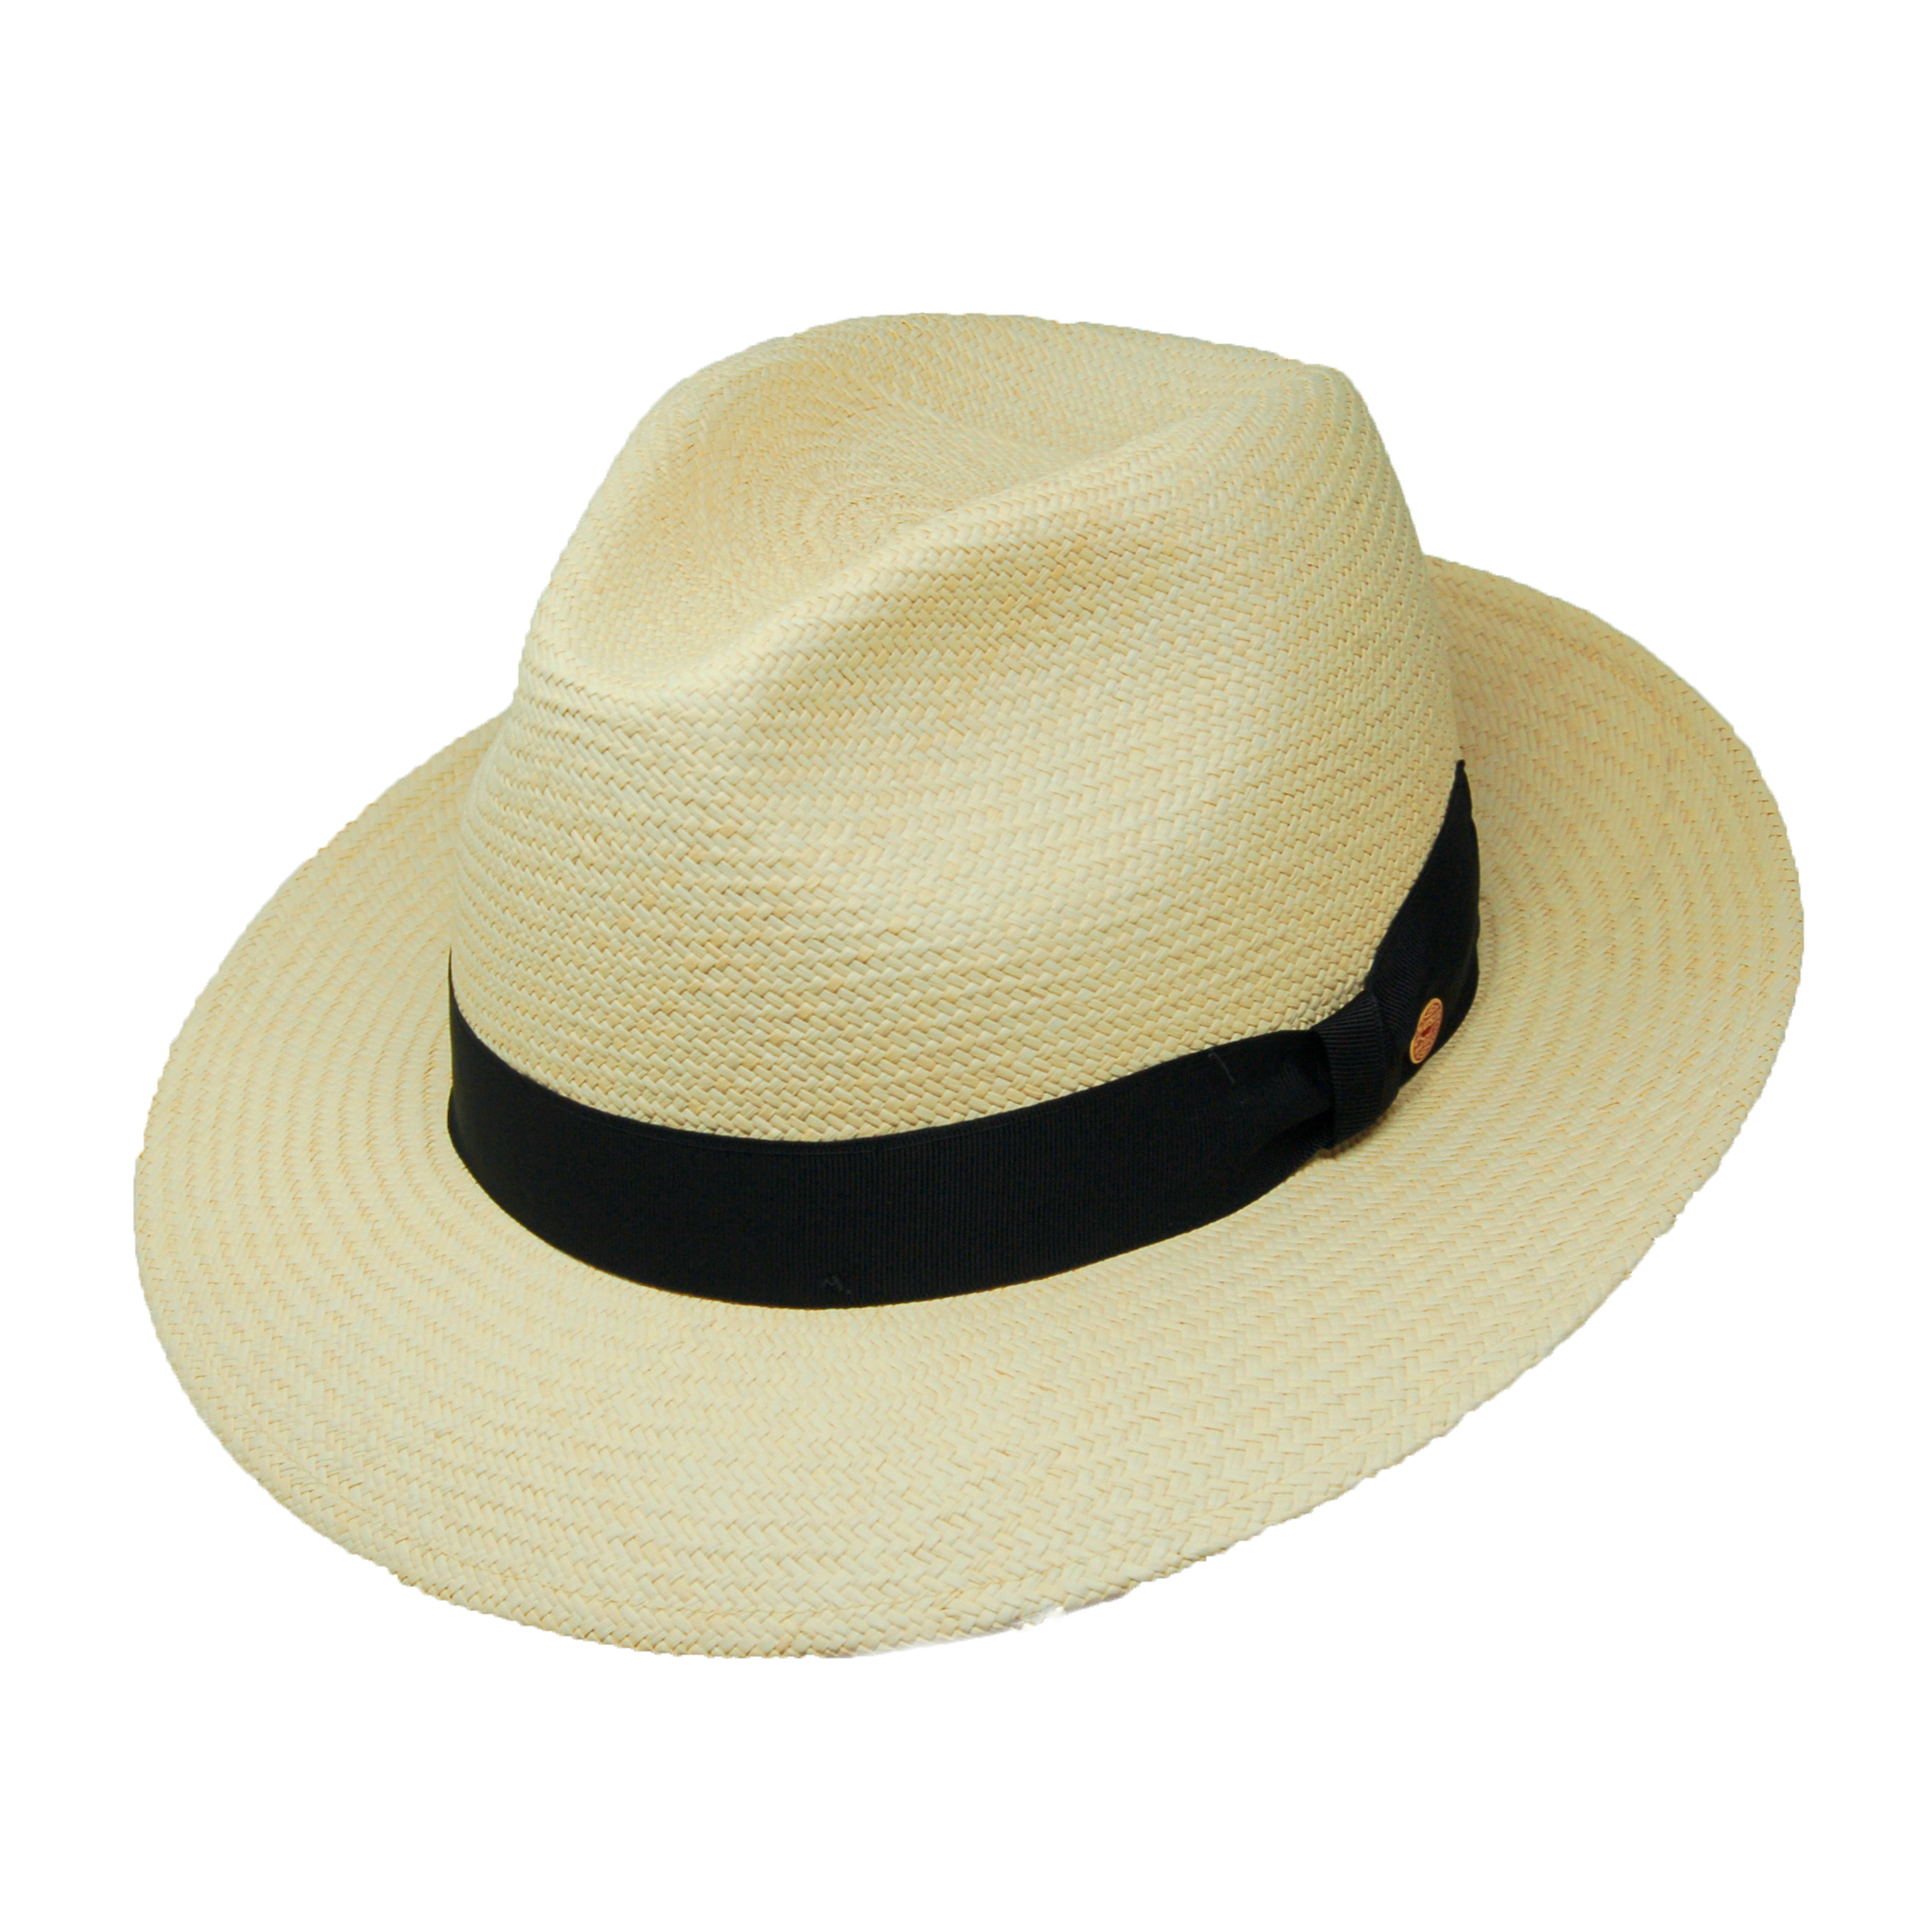 Mayser Torino Panama Straw Hat